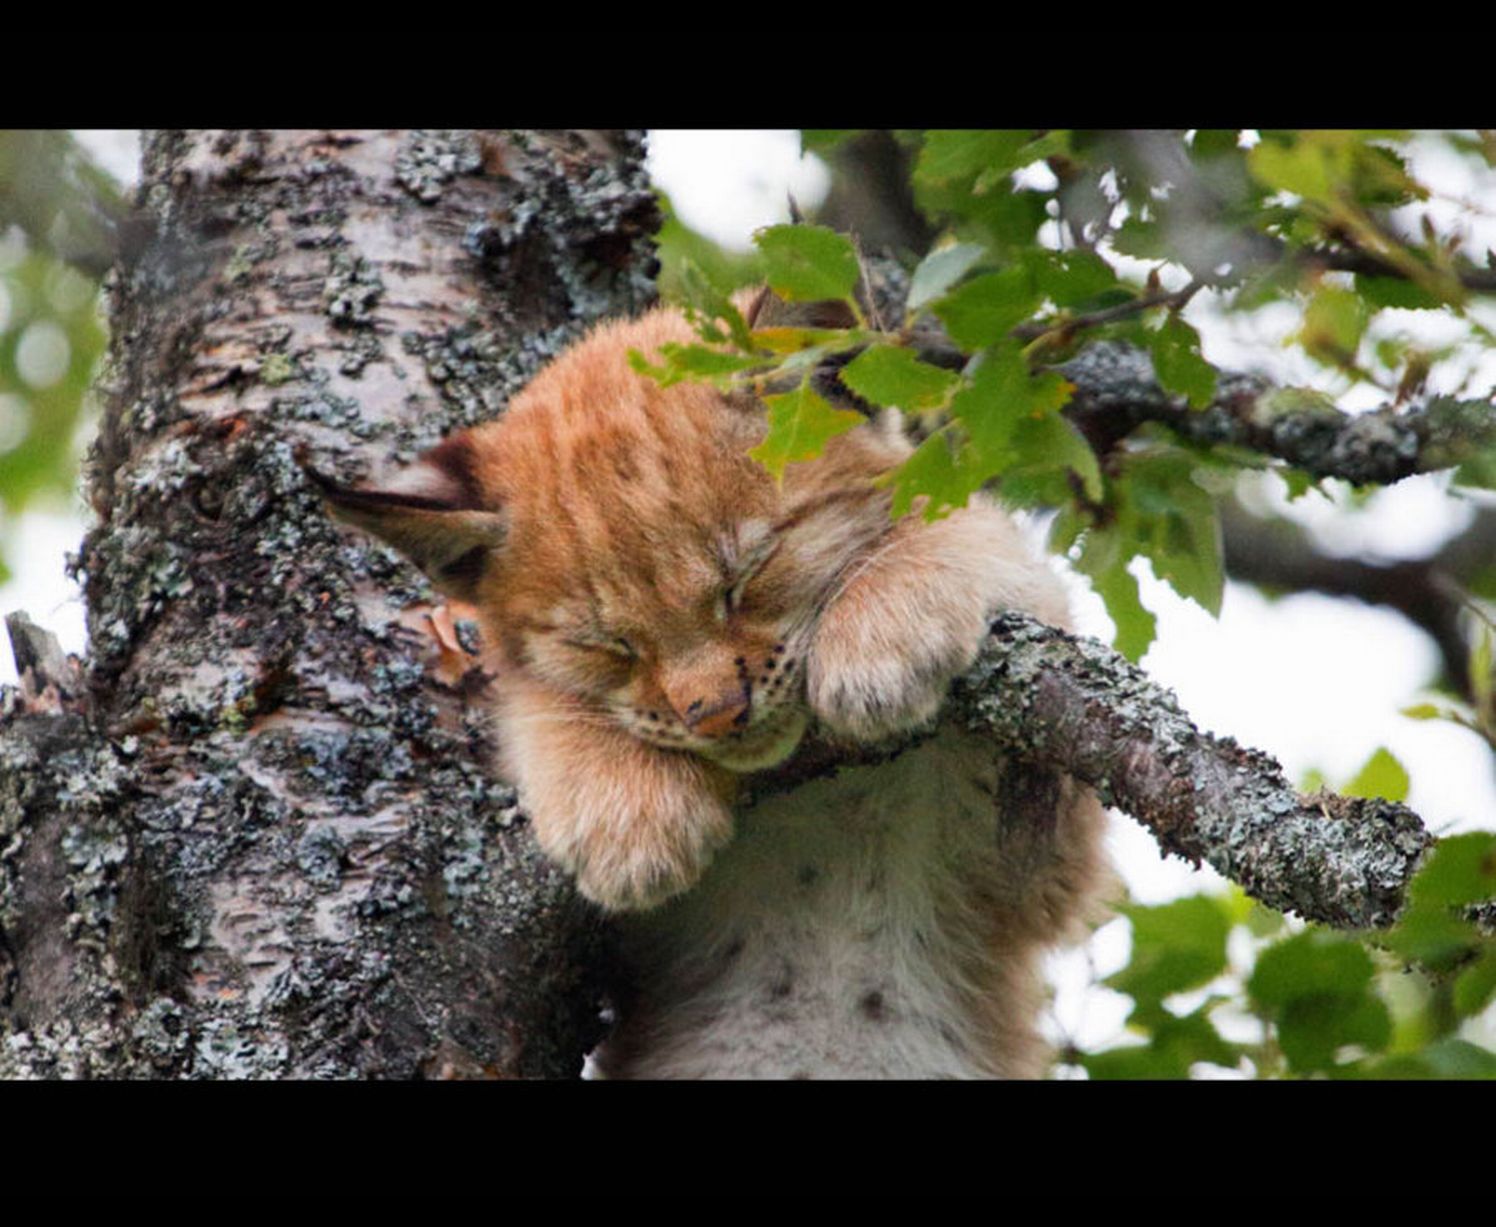 The cute Lynx kitten falling asleep in the tree